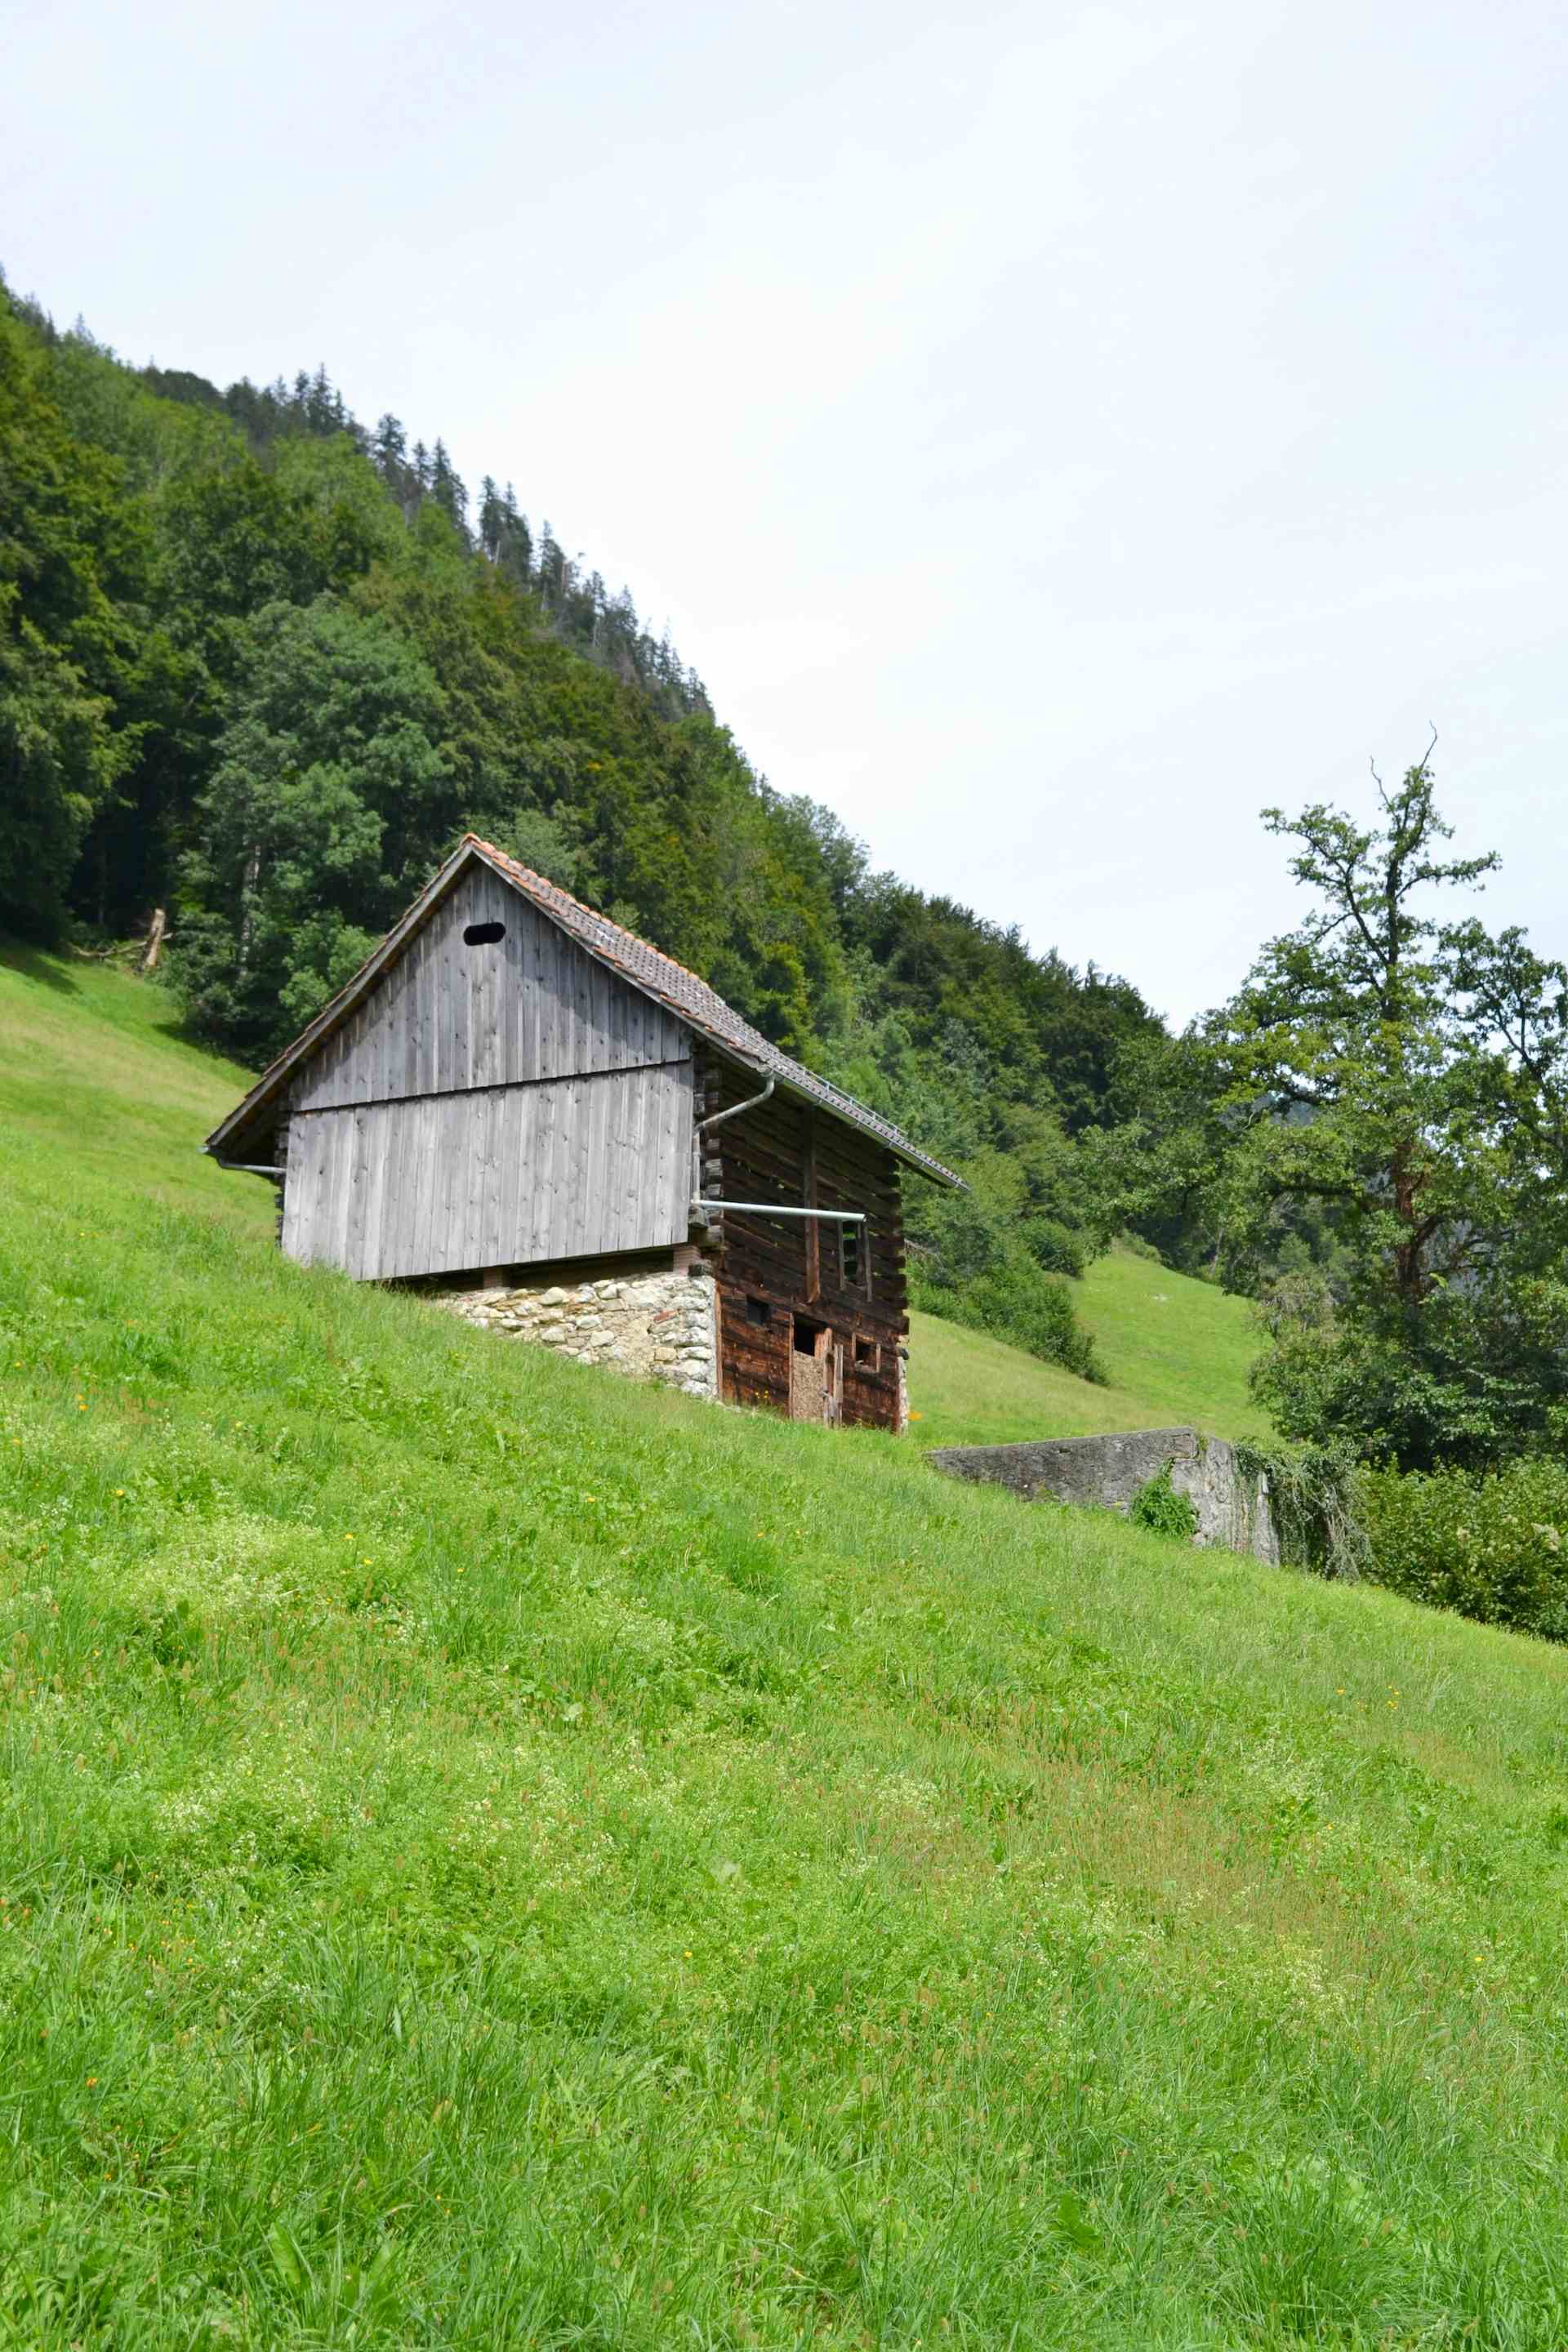 Hirzmatt, producer in Steinhuserberg canton of Lucerne in Switzerland